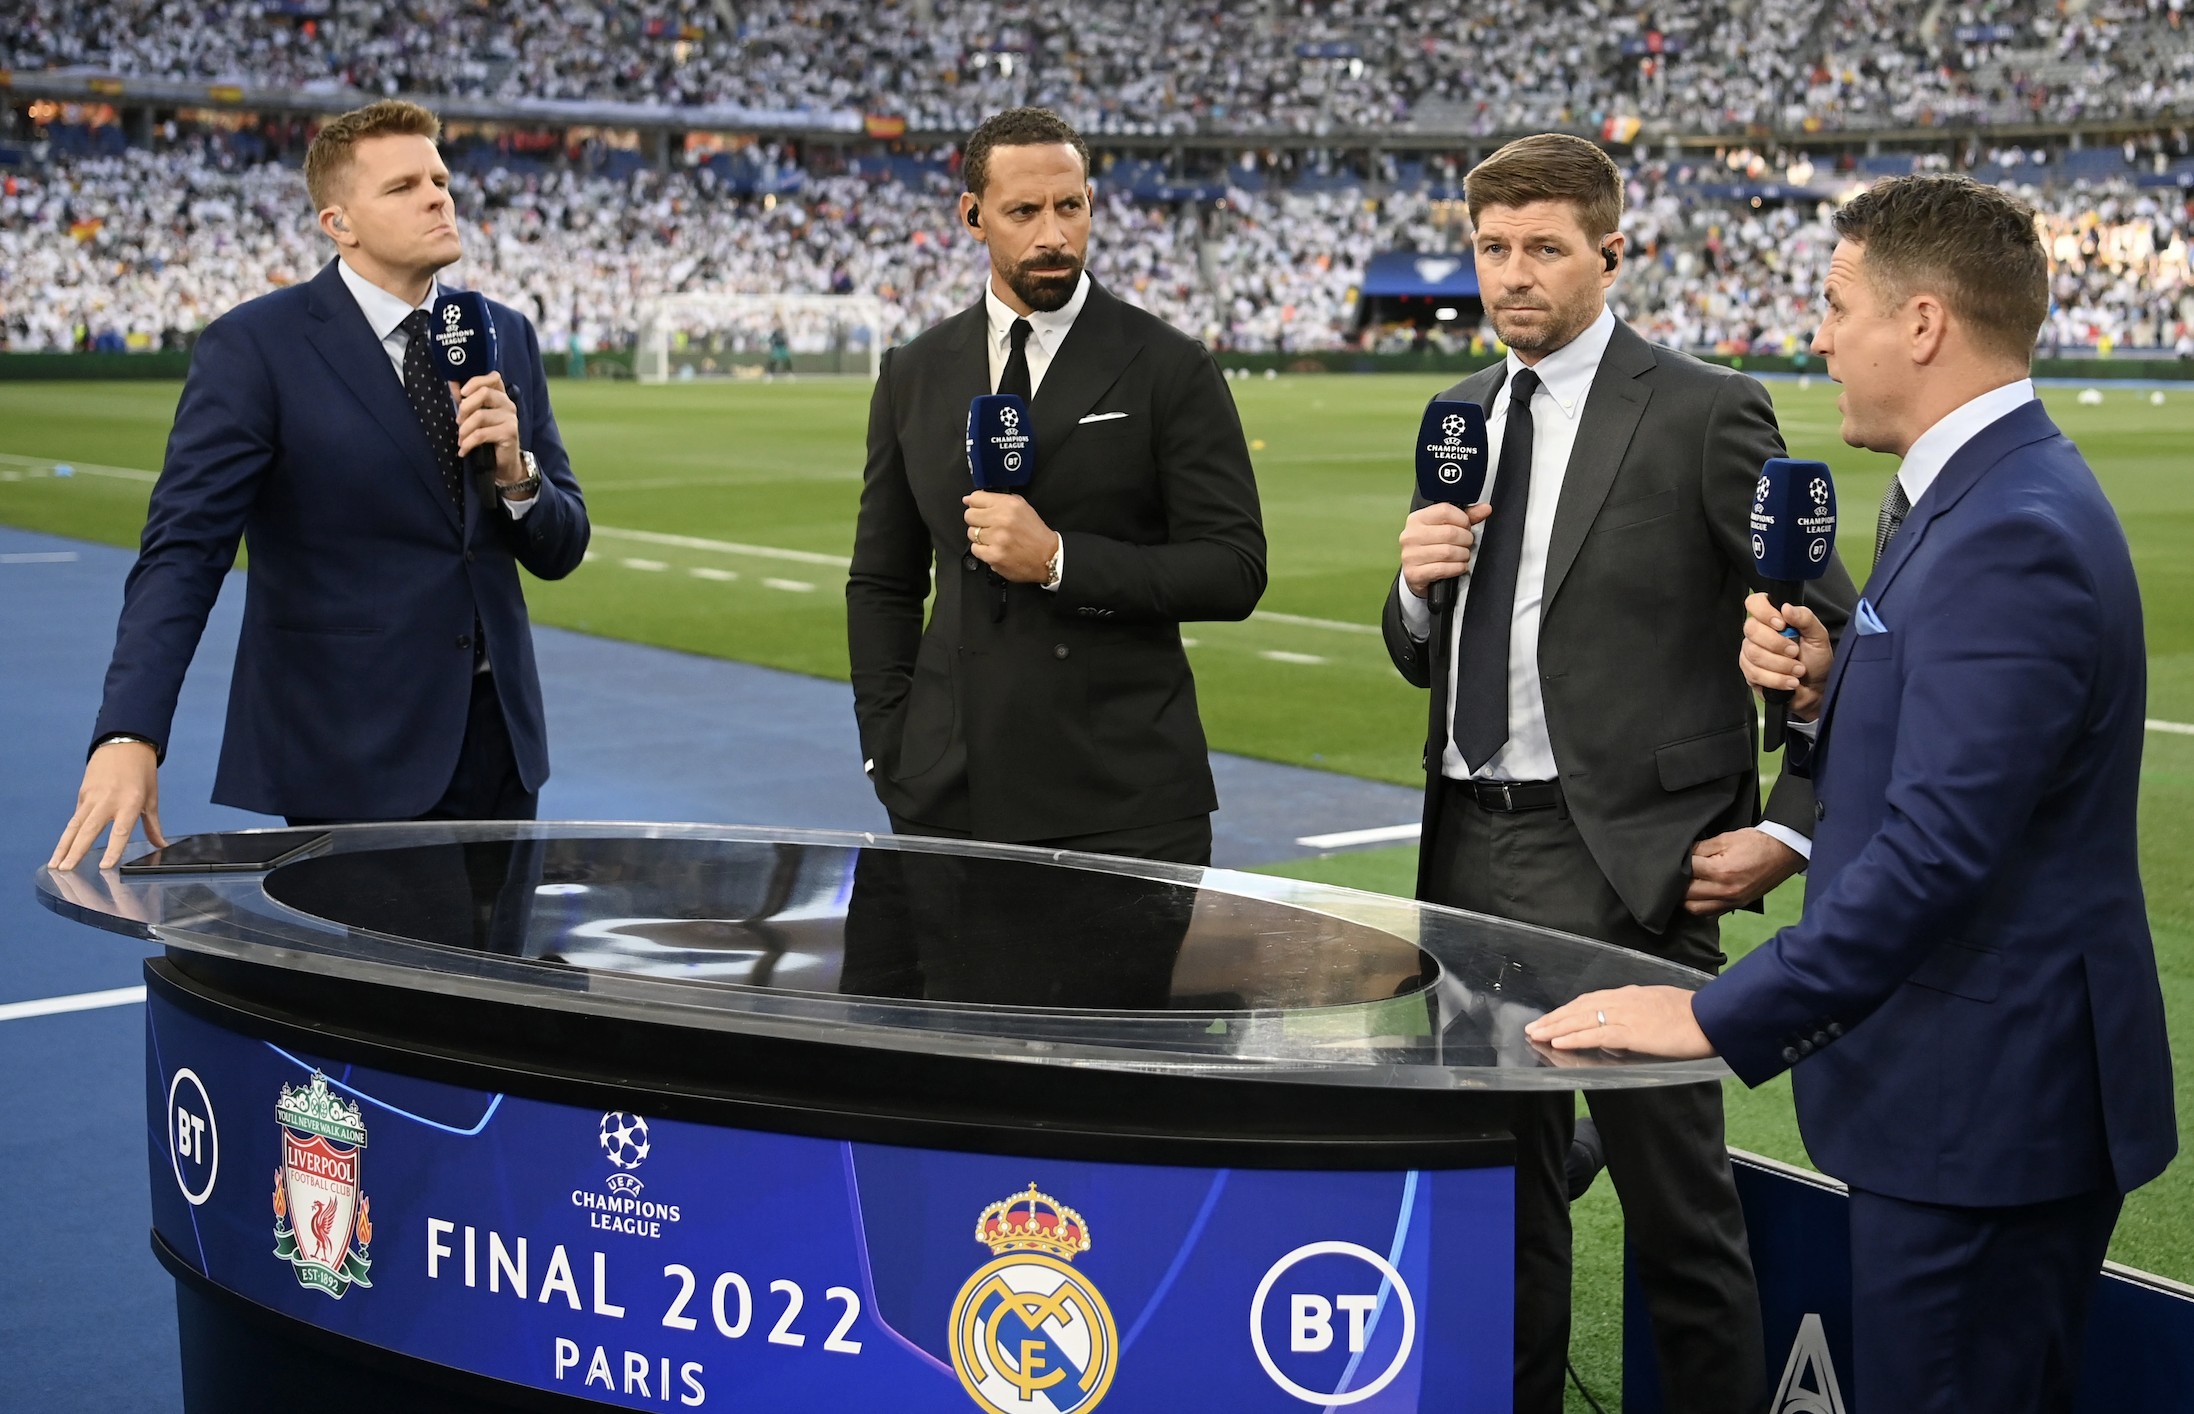 Globo tenta readquirir direitos de transmissão da Champions League - Metro 1